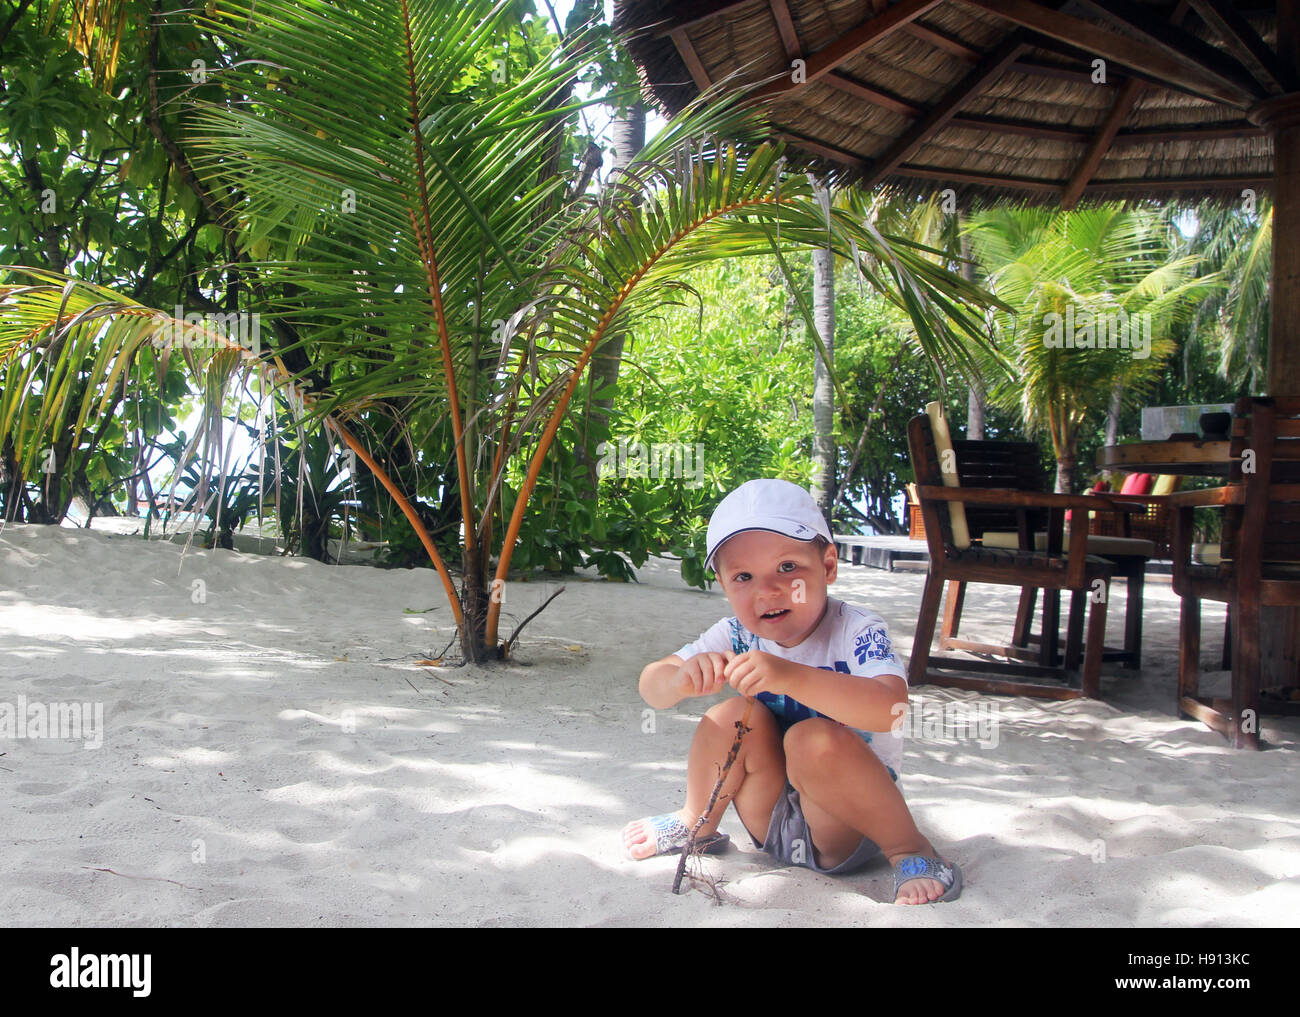 3 year old kid on a beach near a bar in maldives Stock Photo